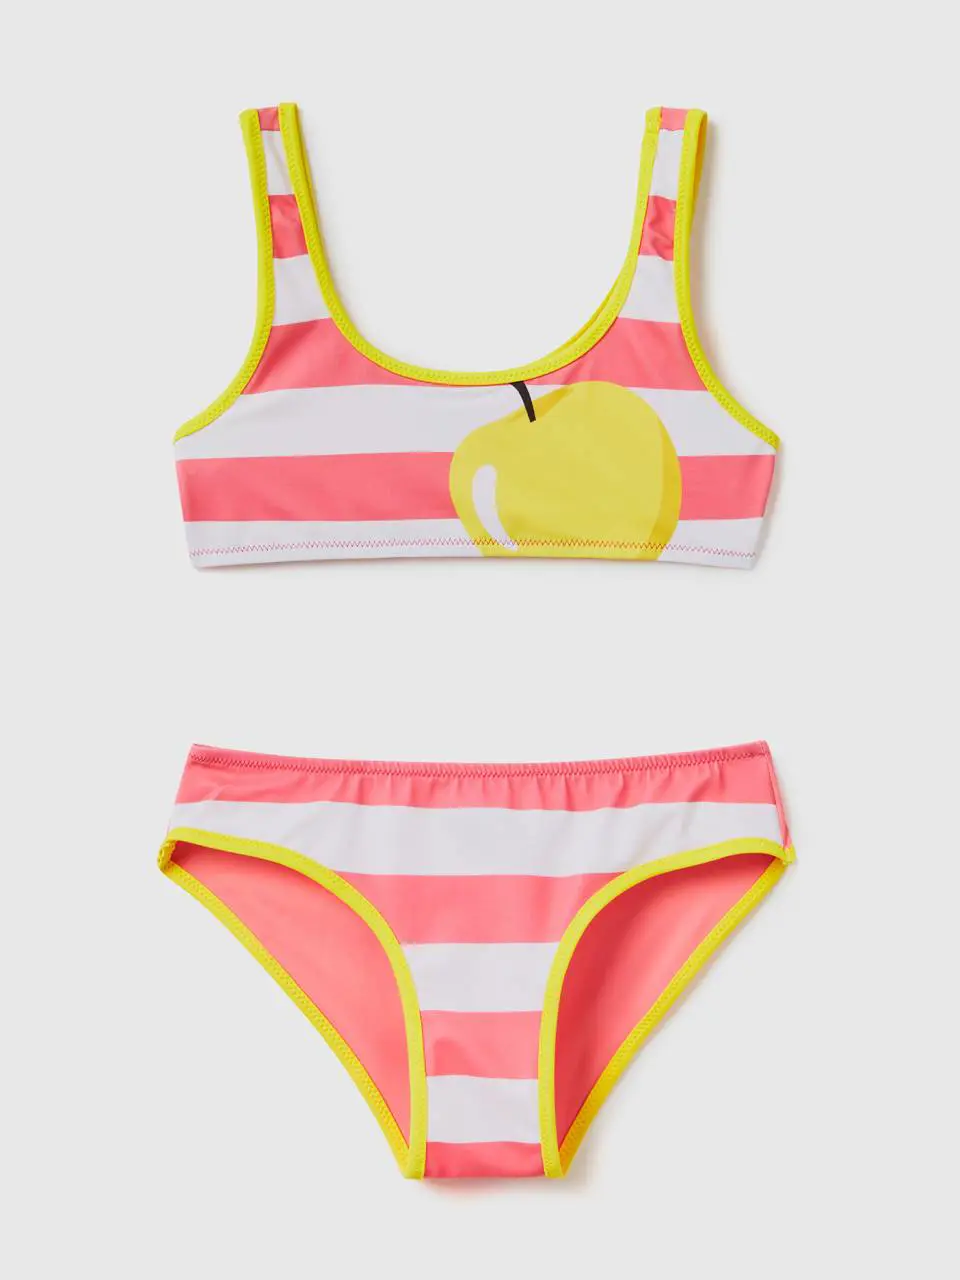 Benetton bikini with apple print. 1